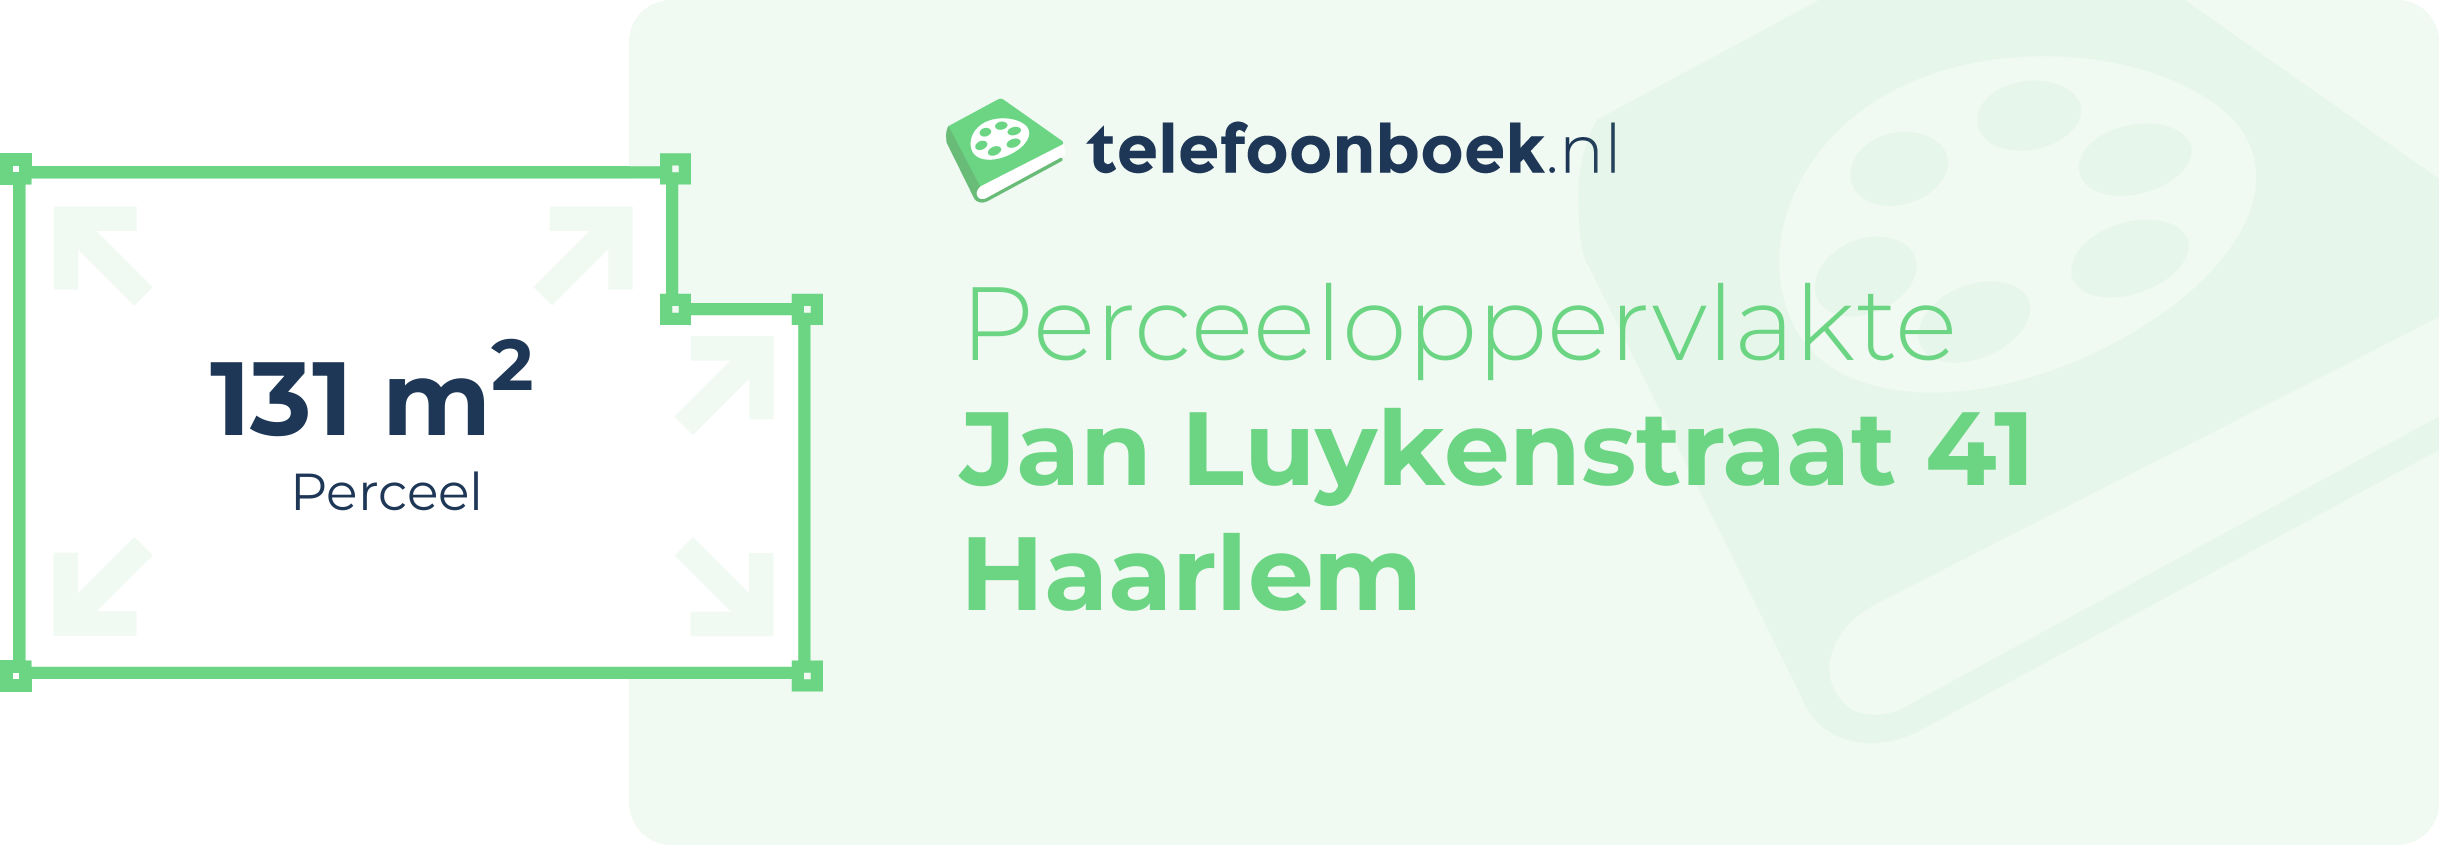 Perceeloppervlakte Jan Luykenstraat 41 Haarlem